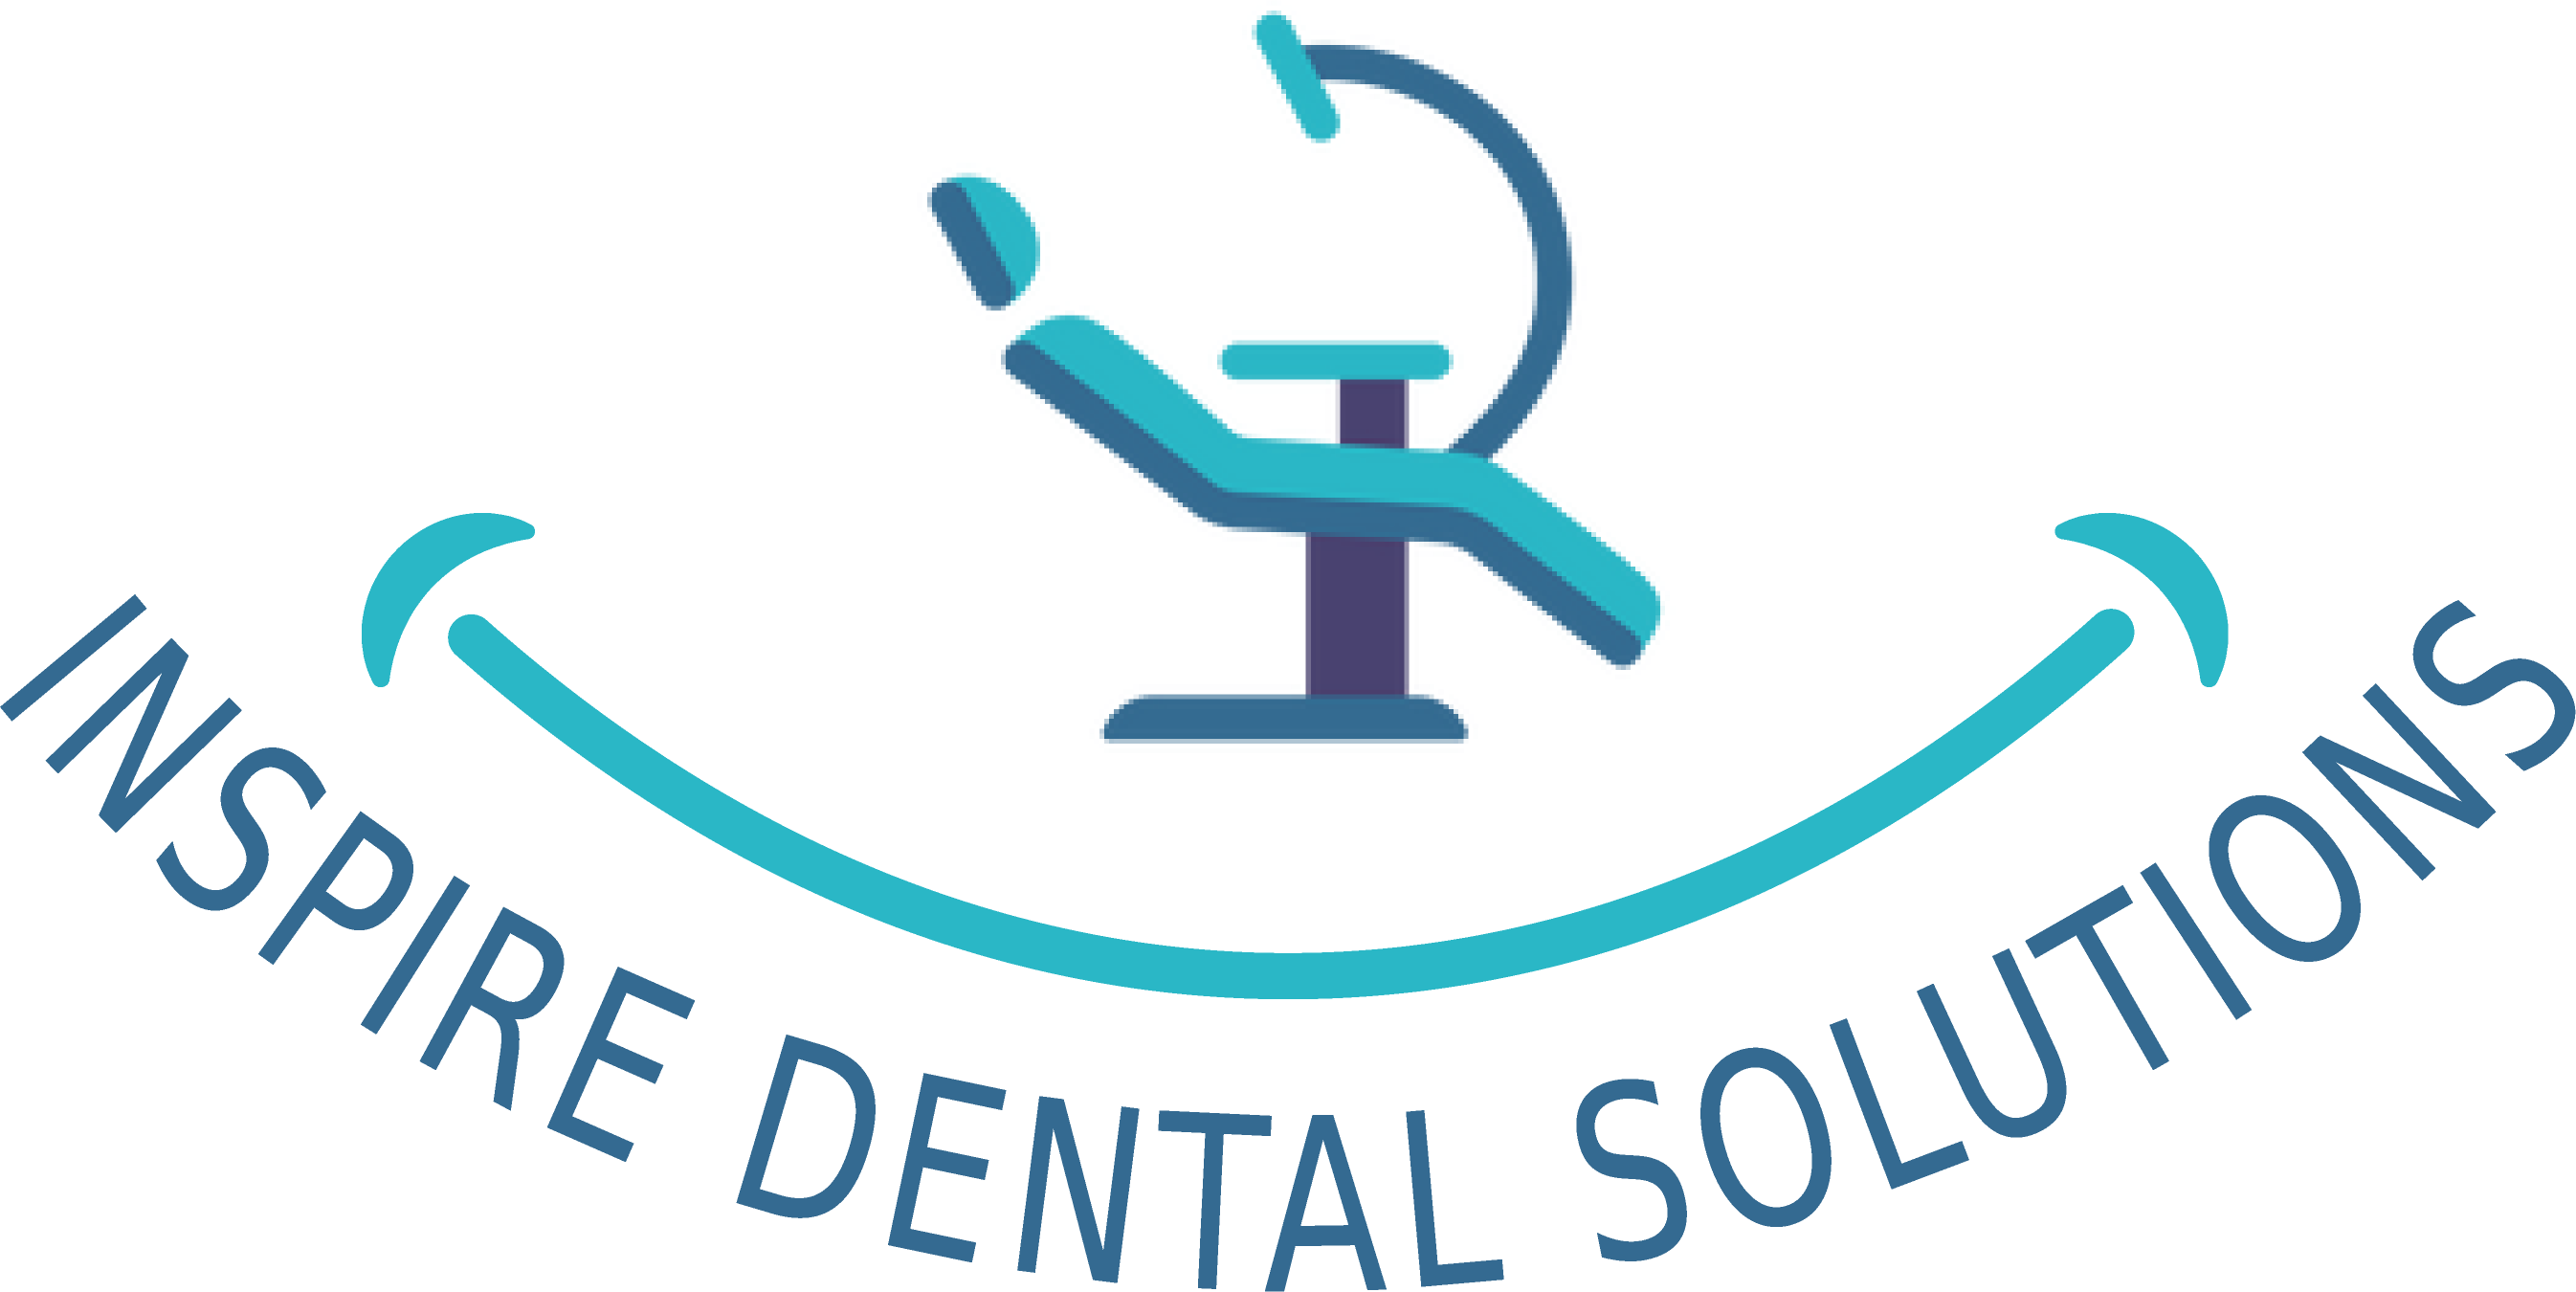 inspire dental solutions logo